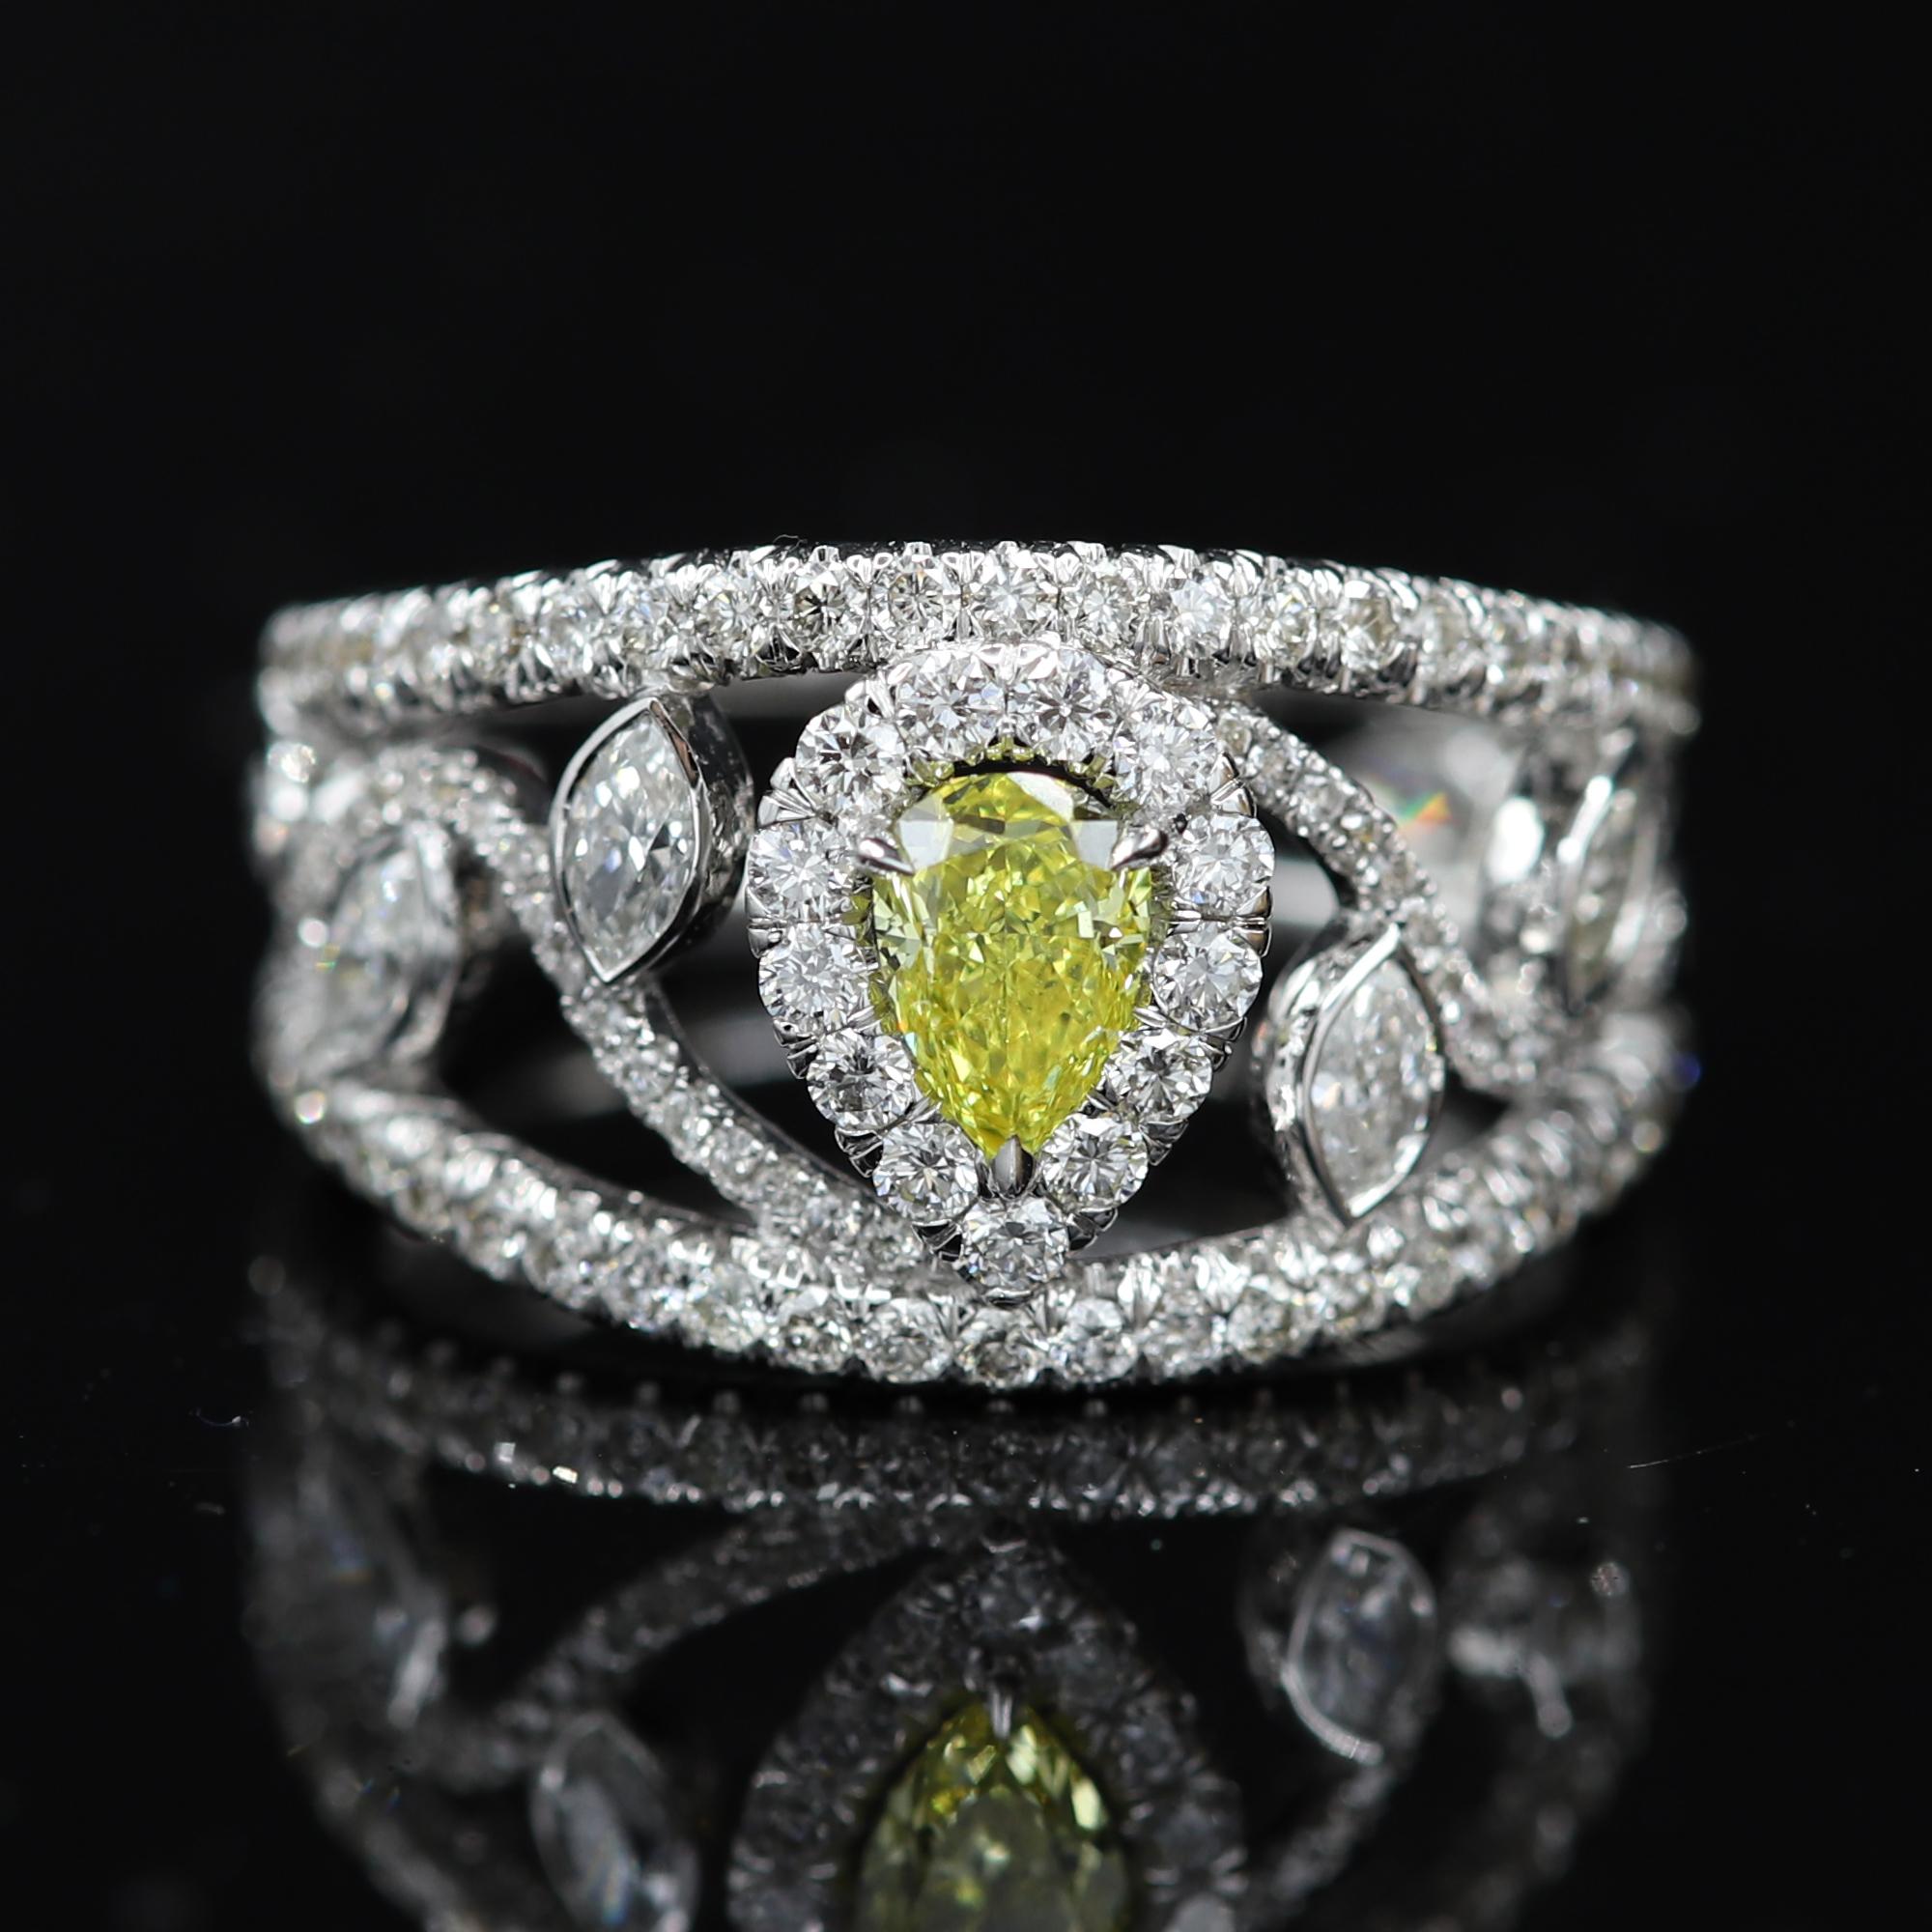 Diamant jaune intense - forme poire 0,45 carat - avec certificat GIA
Bague à diamant de forme mixte, 
or blanc 18k 6,10 grammes. Taille de doigt 7
Total de tous les diamants (sans le centre jaune) 1,60 carat  G-VS
l'anneau a une largeur d'environ 13